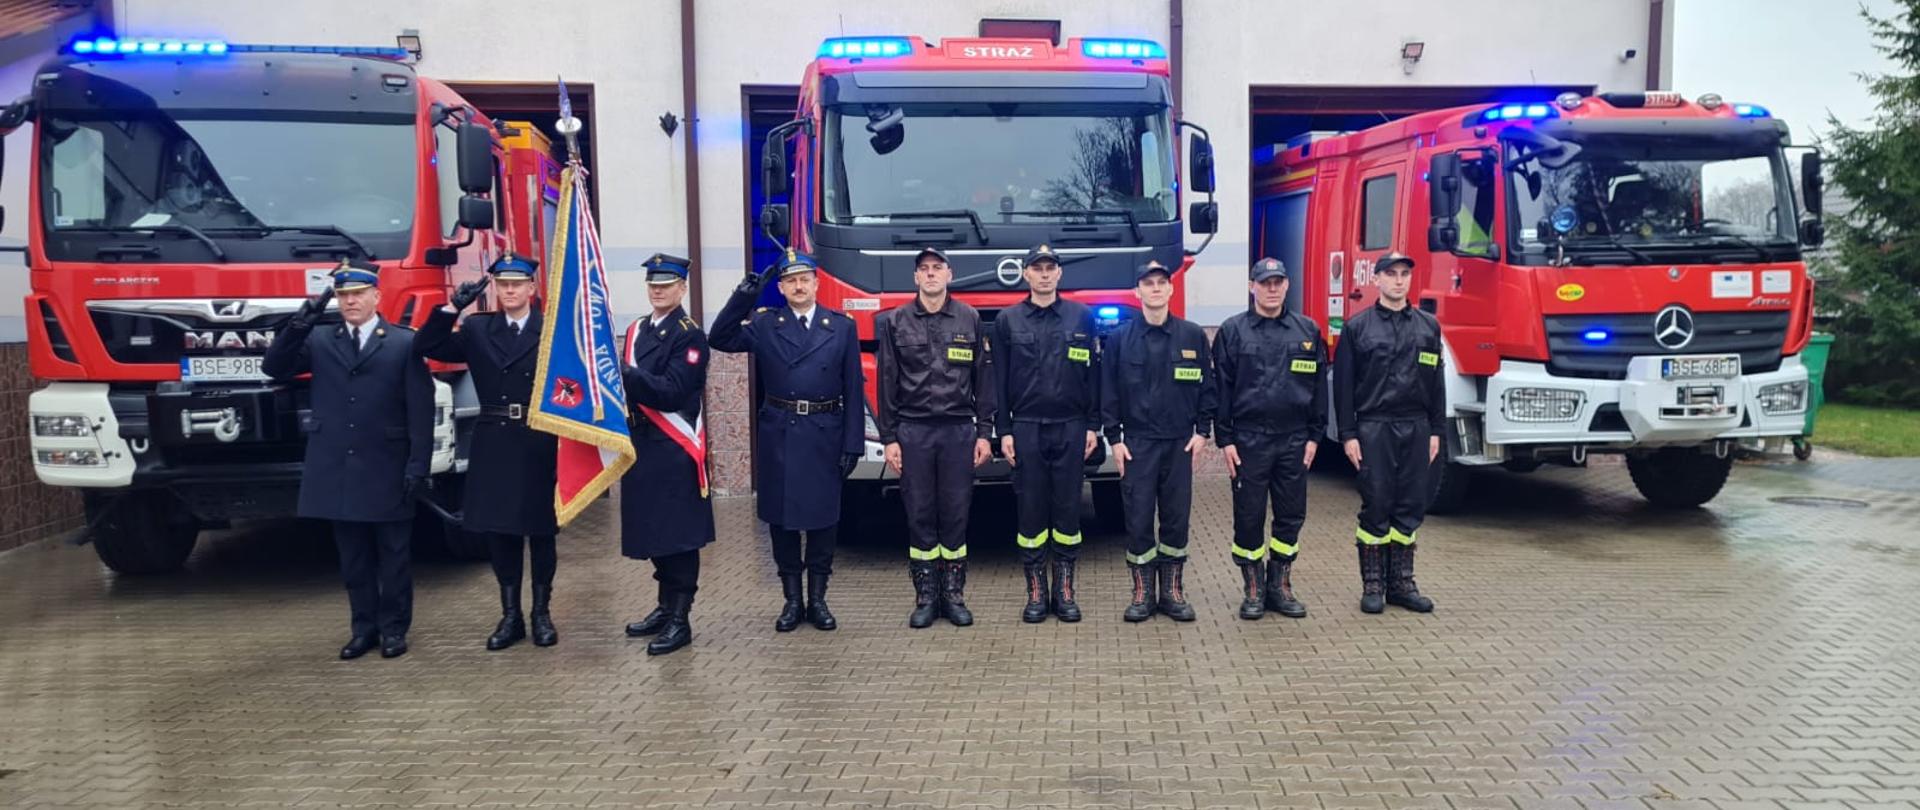 Strażacy Komendy Powiatowej Państwowej Straży Pożarnej w Sejnach uczestniczący podczas akcji "Niepodległa do Hymnu" z okazji rocznicy odzyskania przez Polskę niepodległości